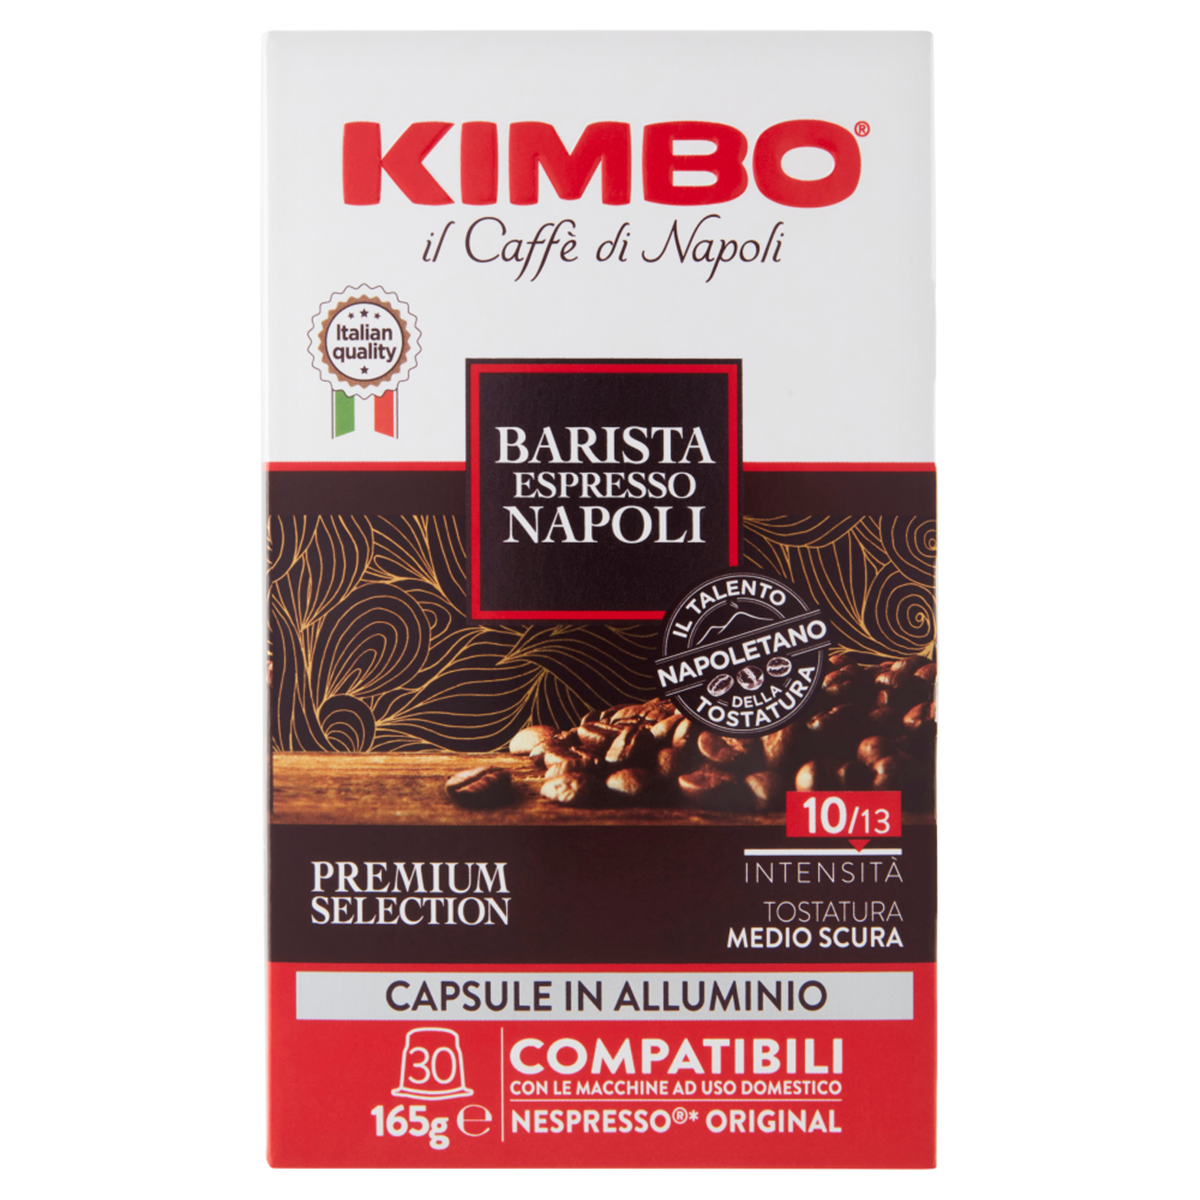 Kimbo Capsule Espresso Napoli